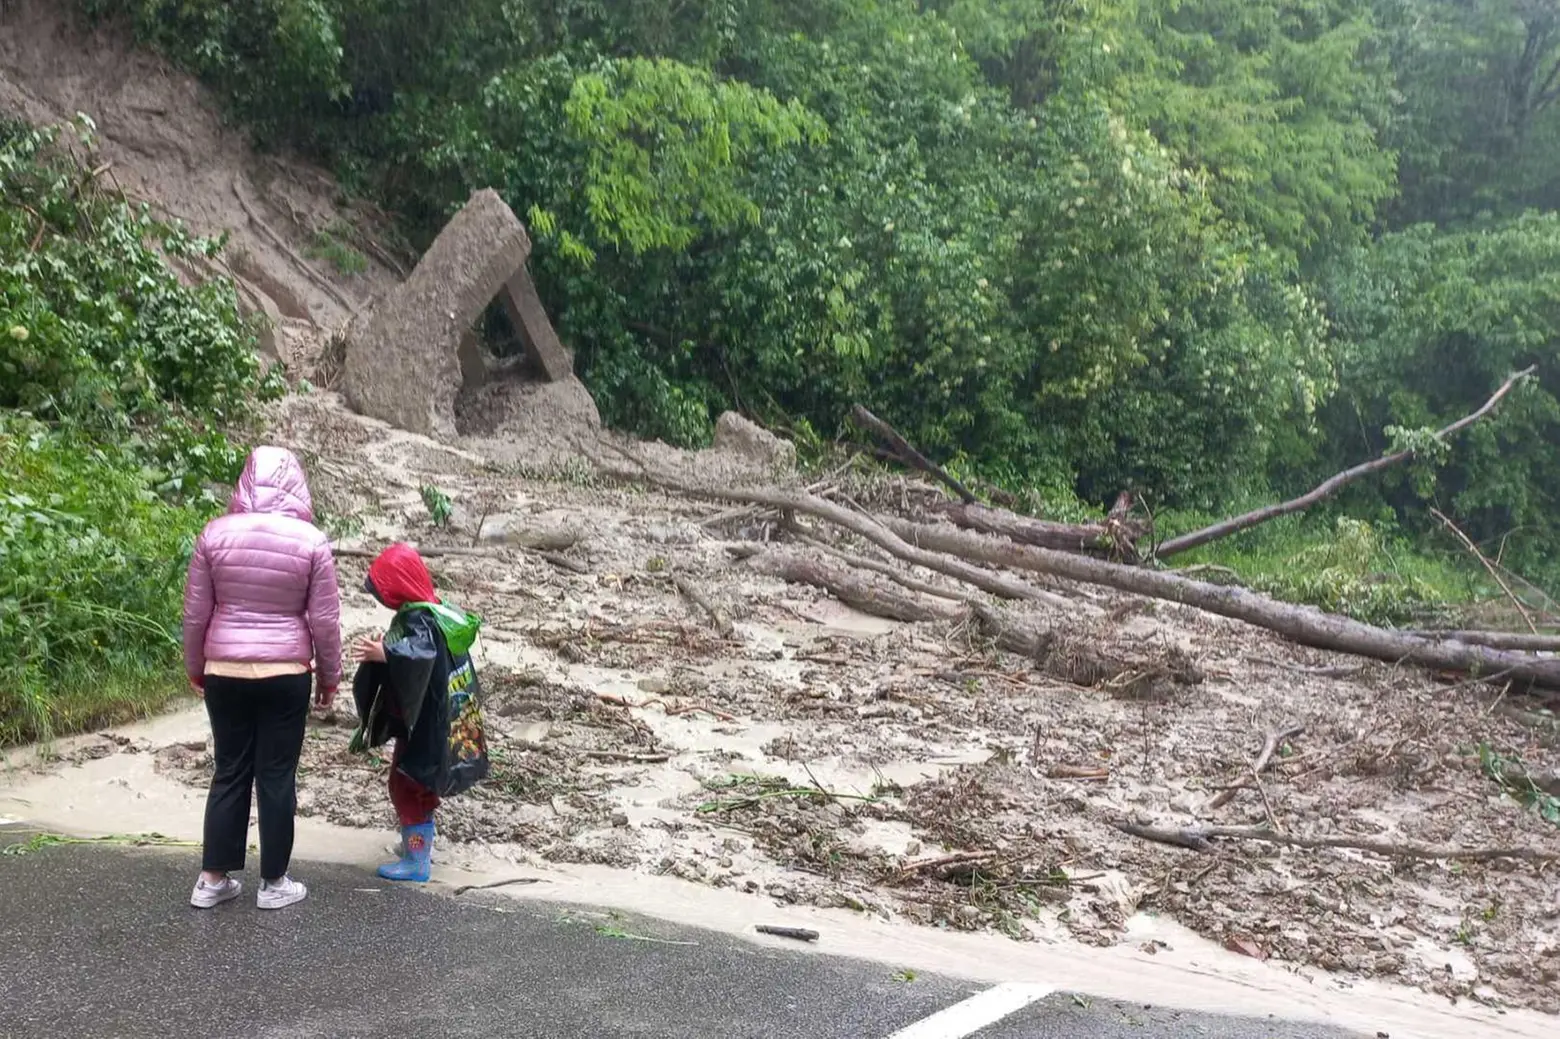 Le frane devastano la collina  Strade ostruite da tronchi e fango